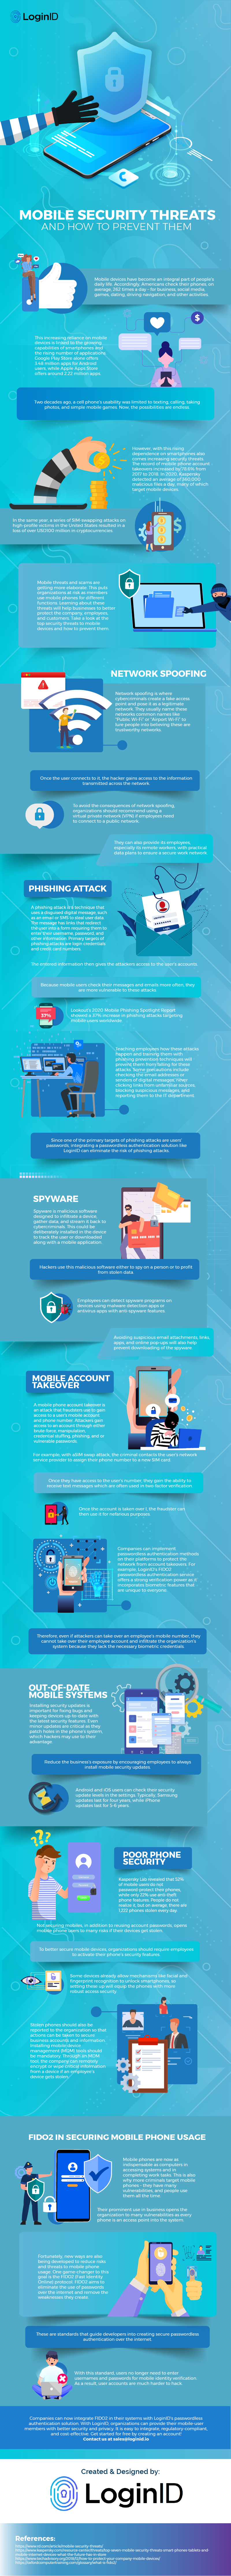 mobile Security threats_IOAWe022e3#$